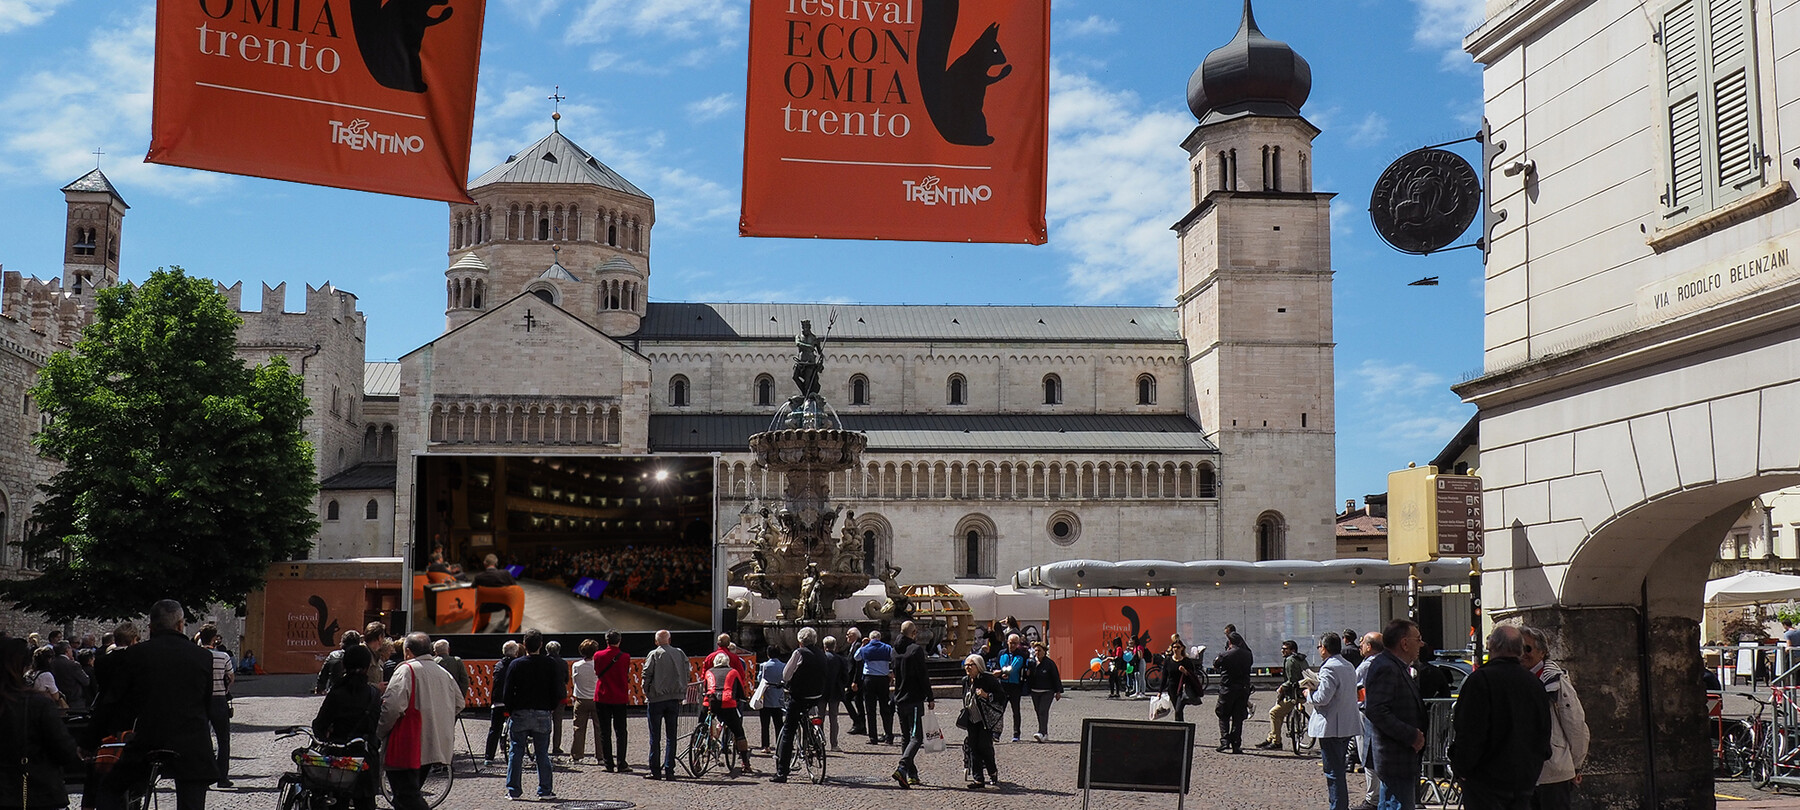 The Festival dell’Economia in Trento